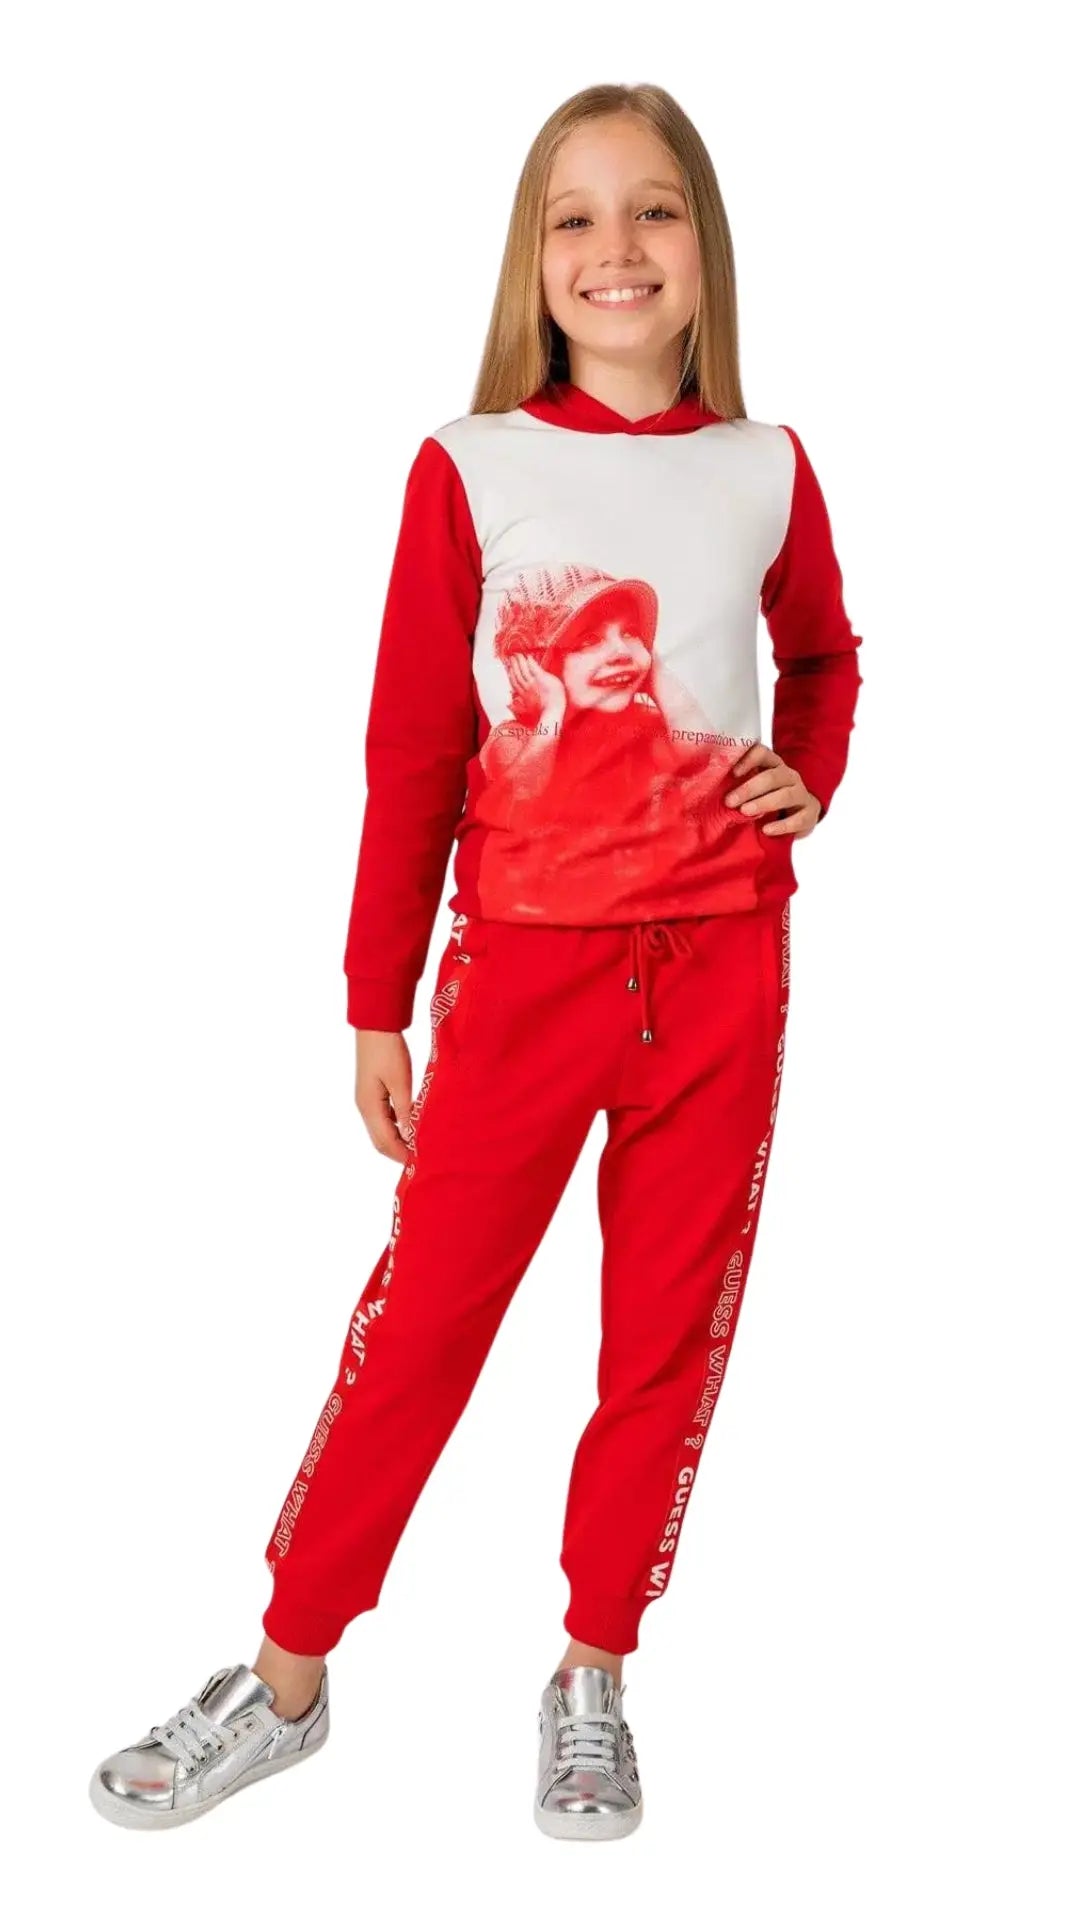 InCity Girls Tween 7-14 Years Regular Fit Red Casual Long Sleeve Comfy Printed Fairlop Hoodie Sweatshirt InCity Boys & Girls